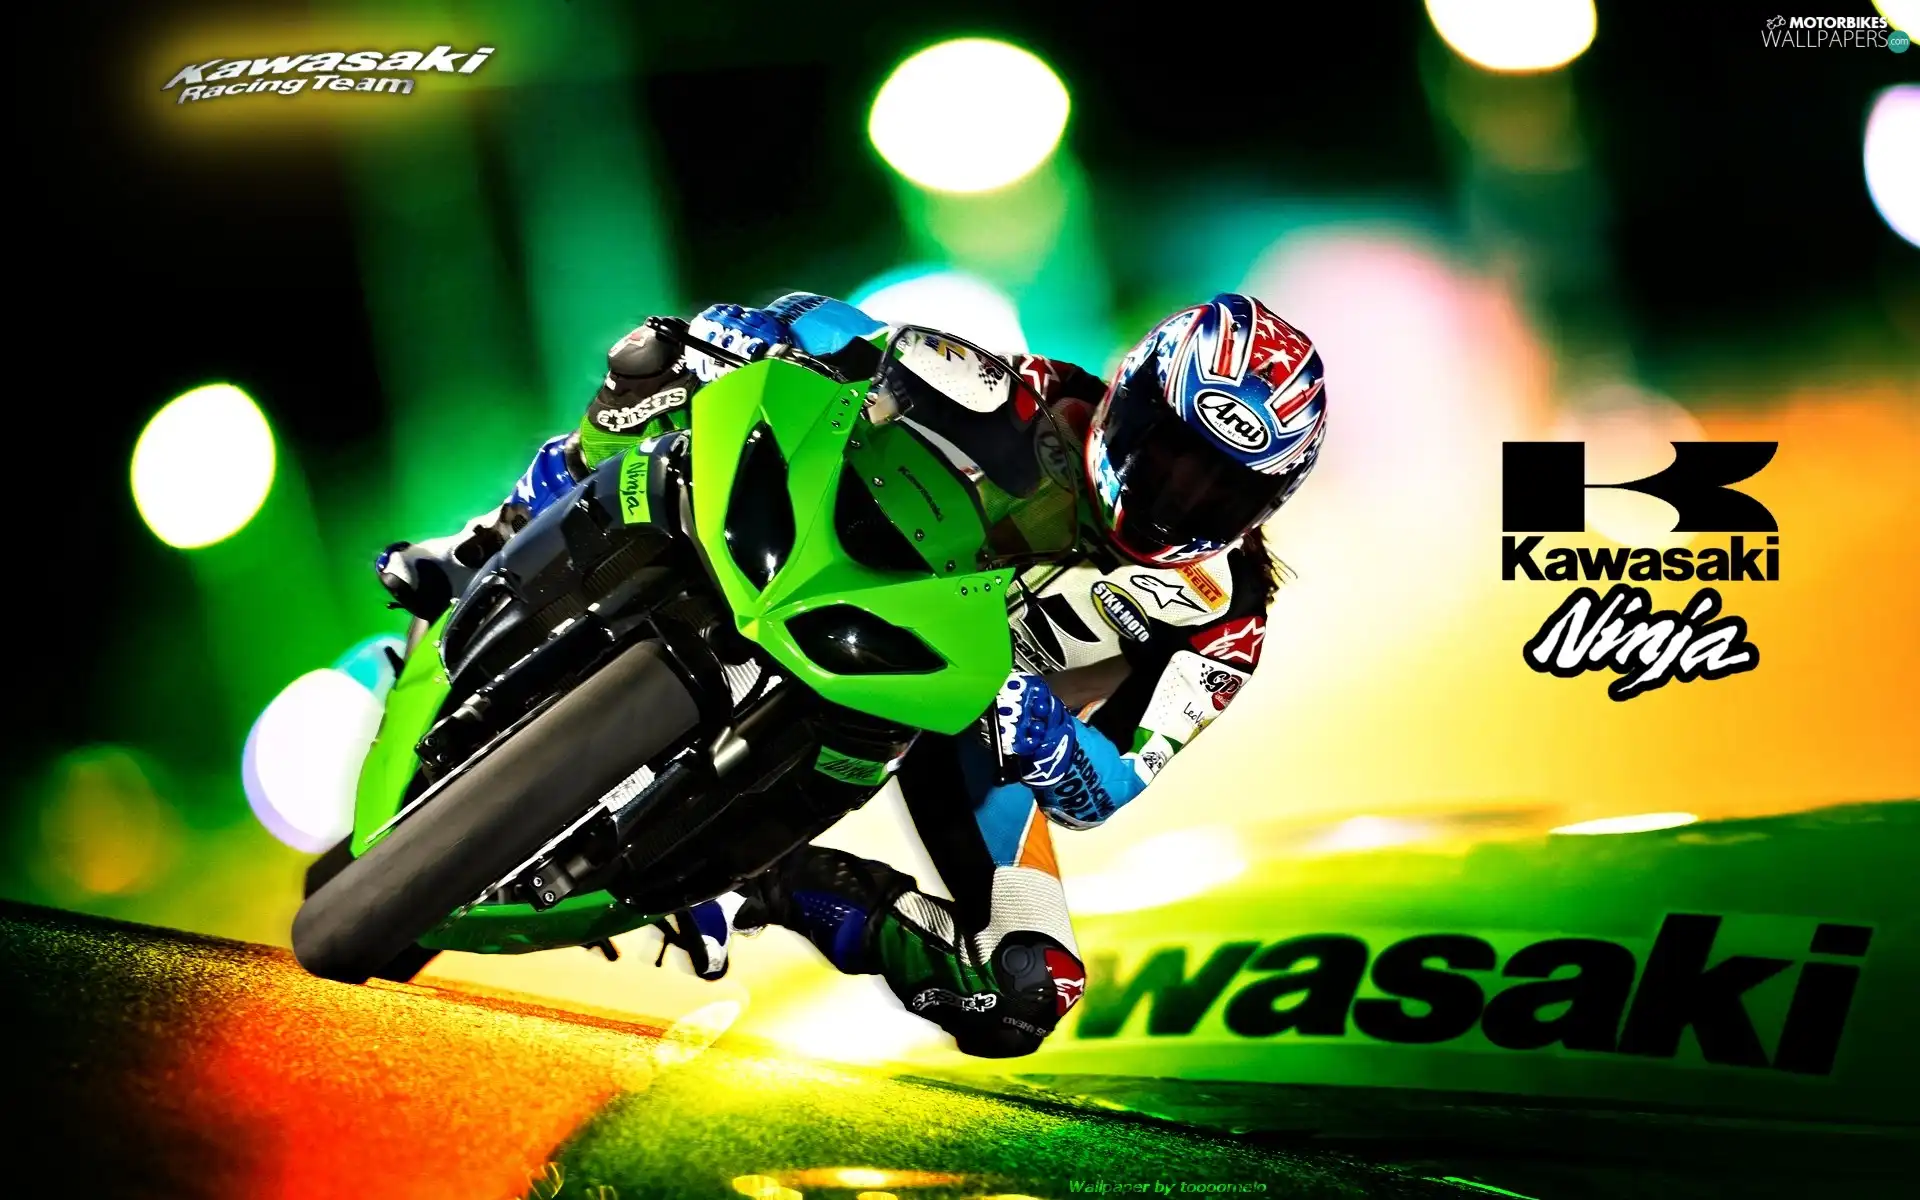 Kawasaki Ninja ZX-10R, logo, Motorcyclist, Green